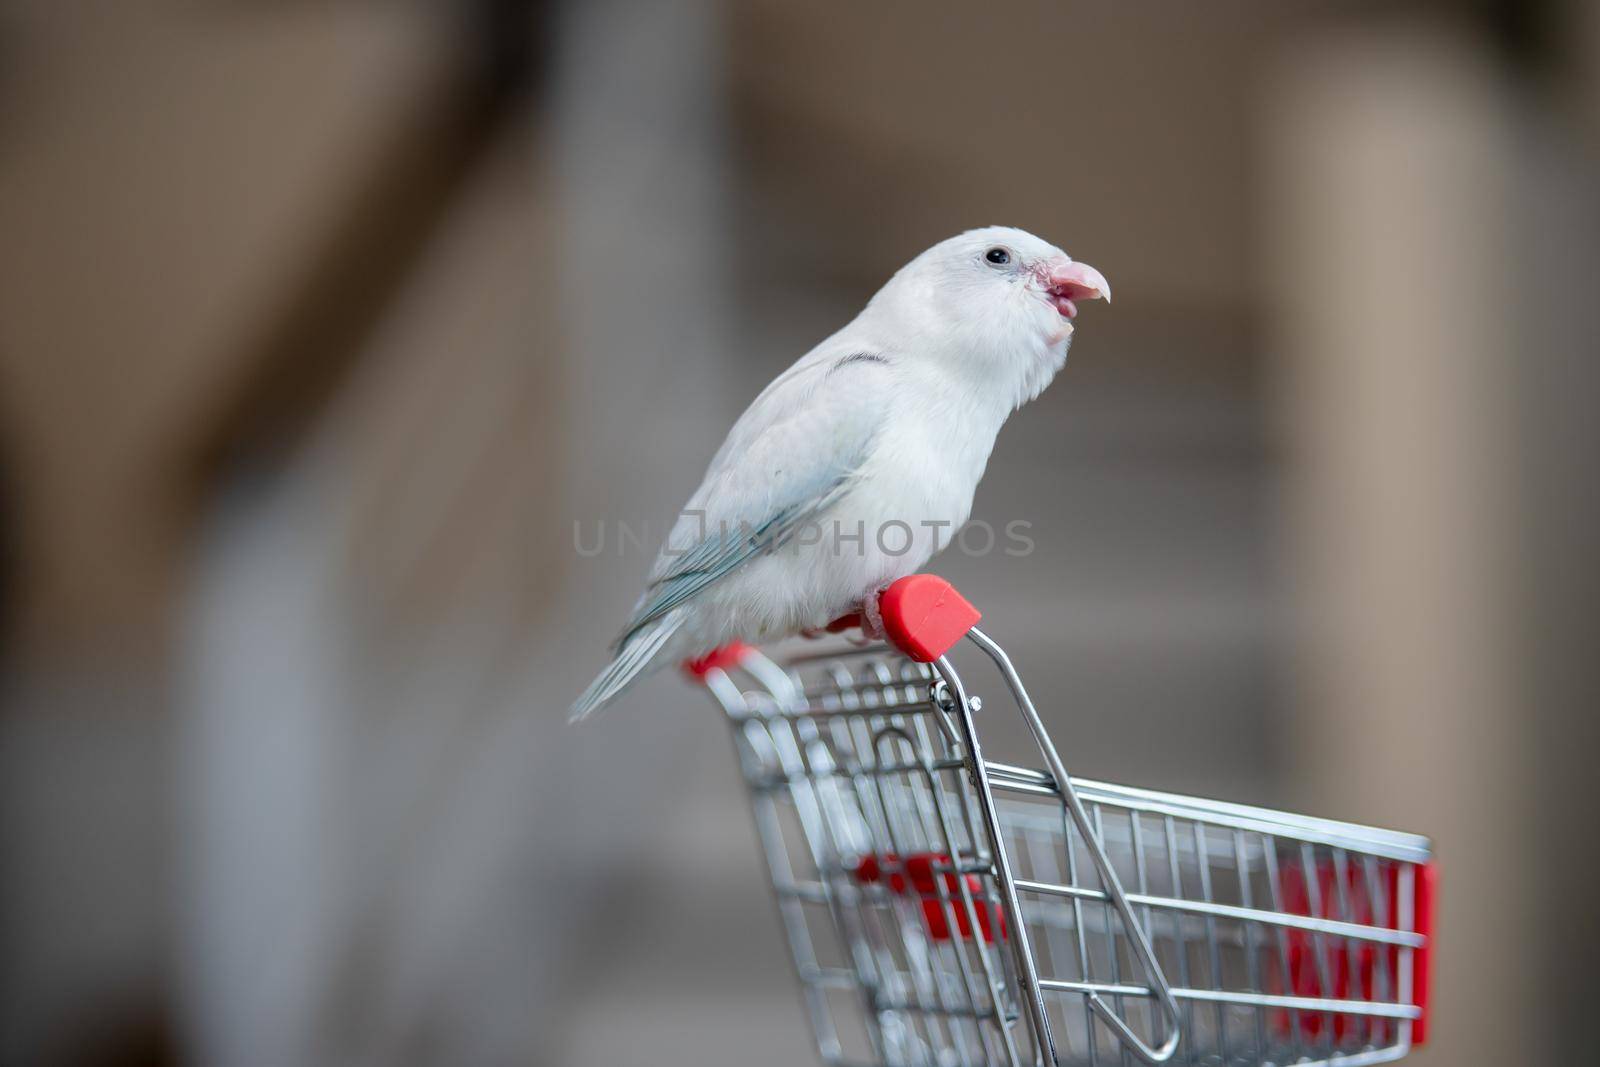 Tiny white parrot parakeet Forpus bird on little shopping cart.